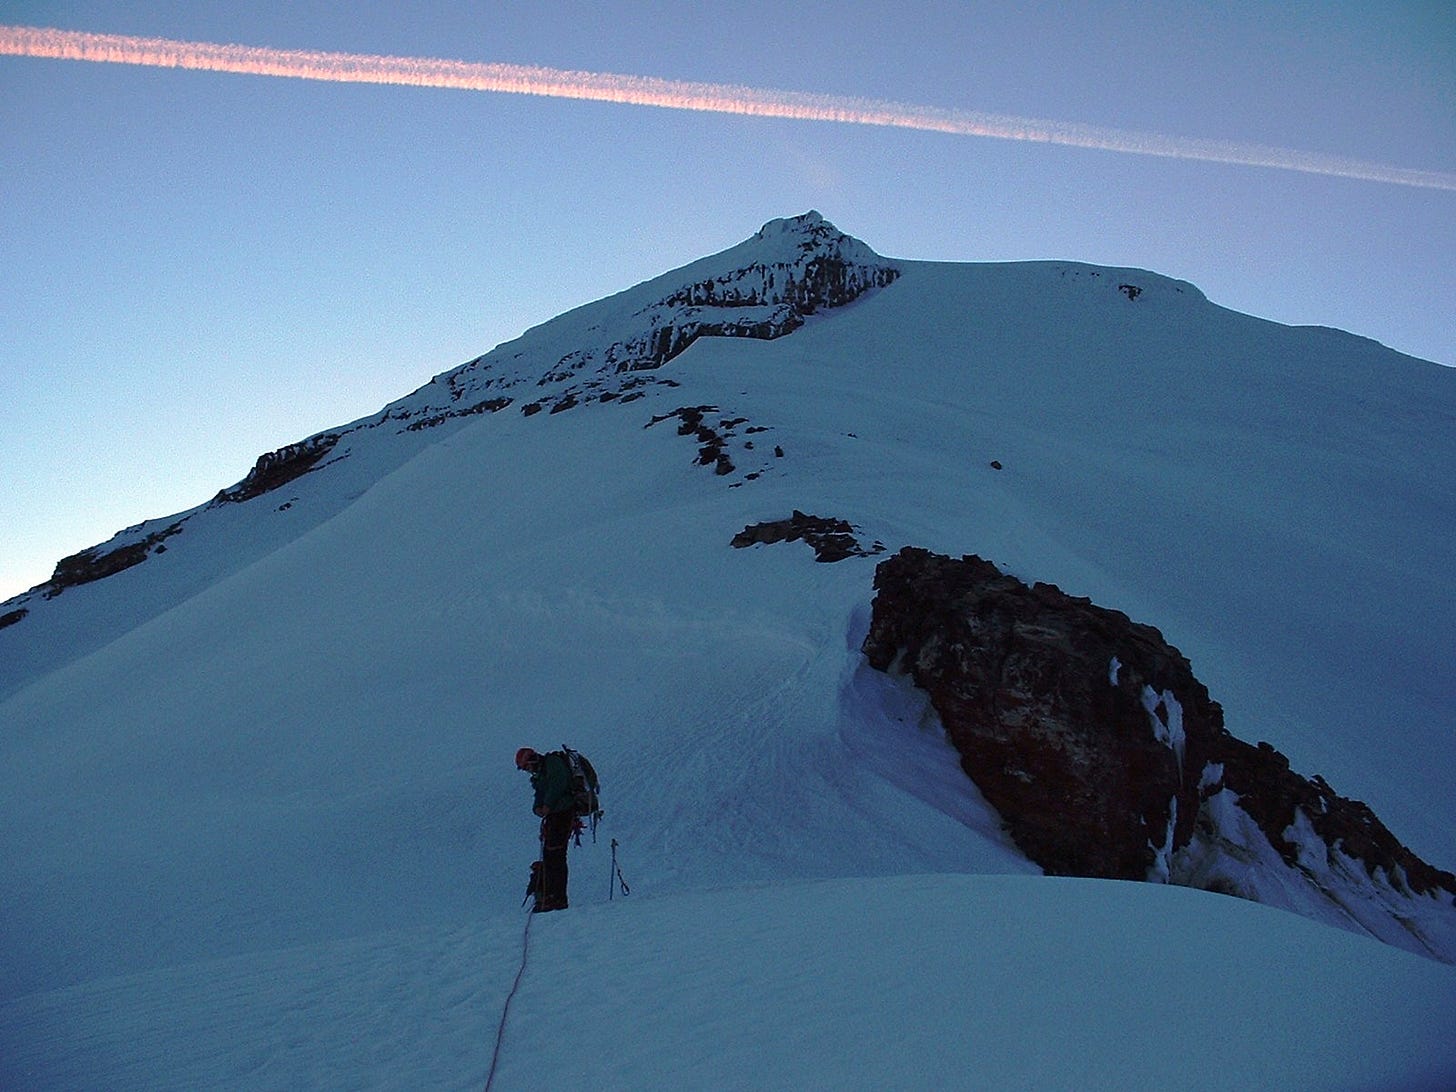 Man pausing on a climb up Mt. Baker